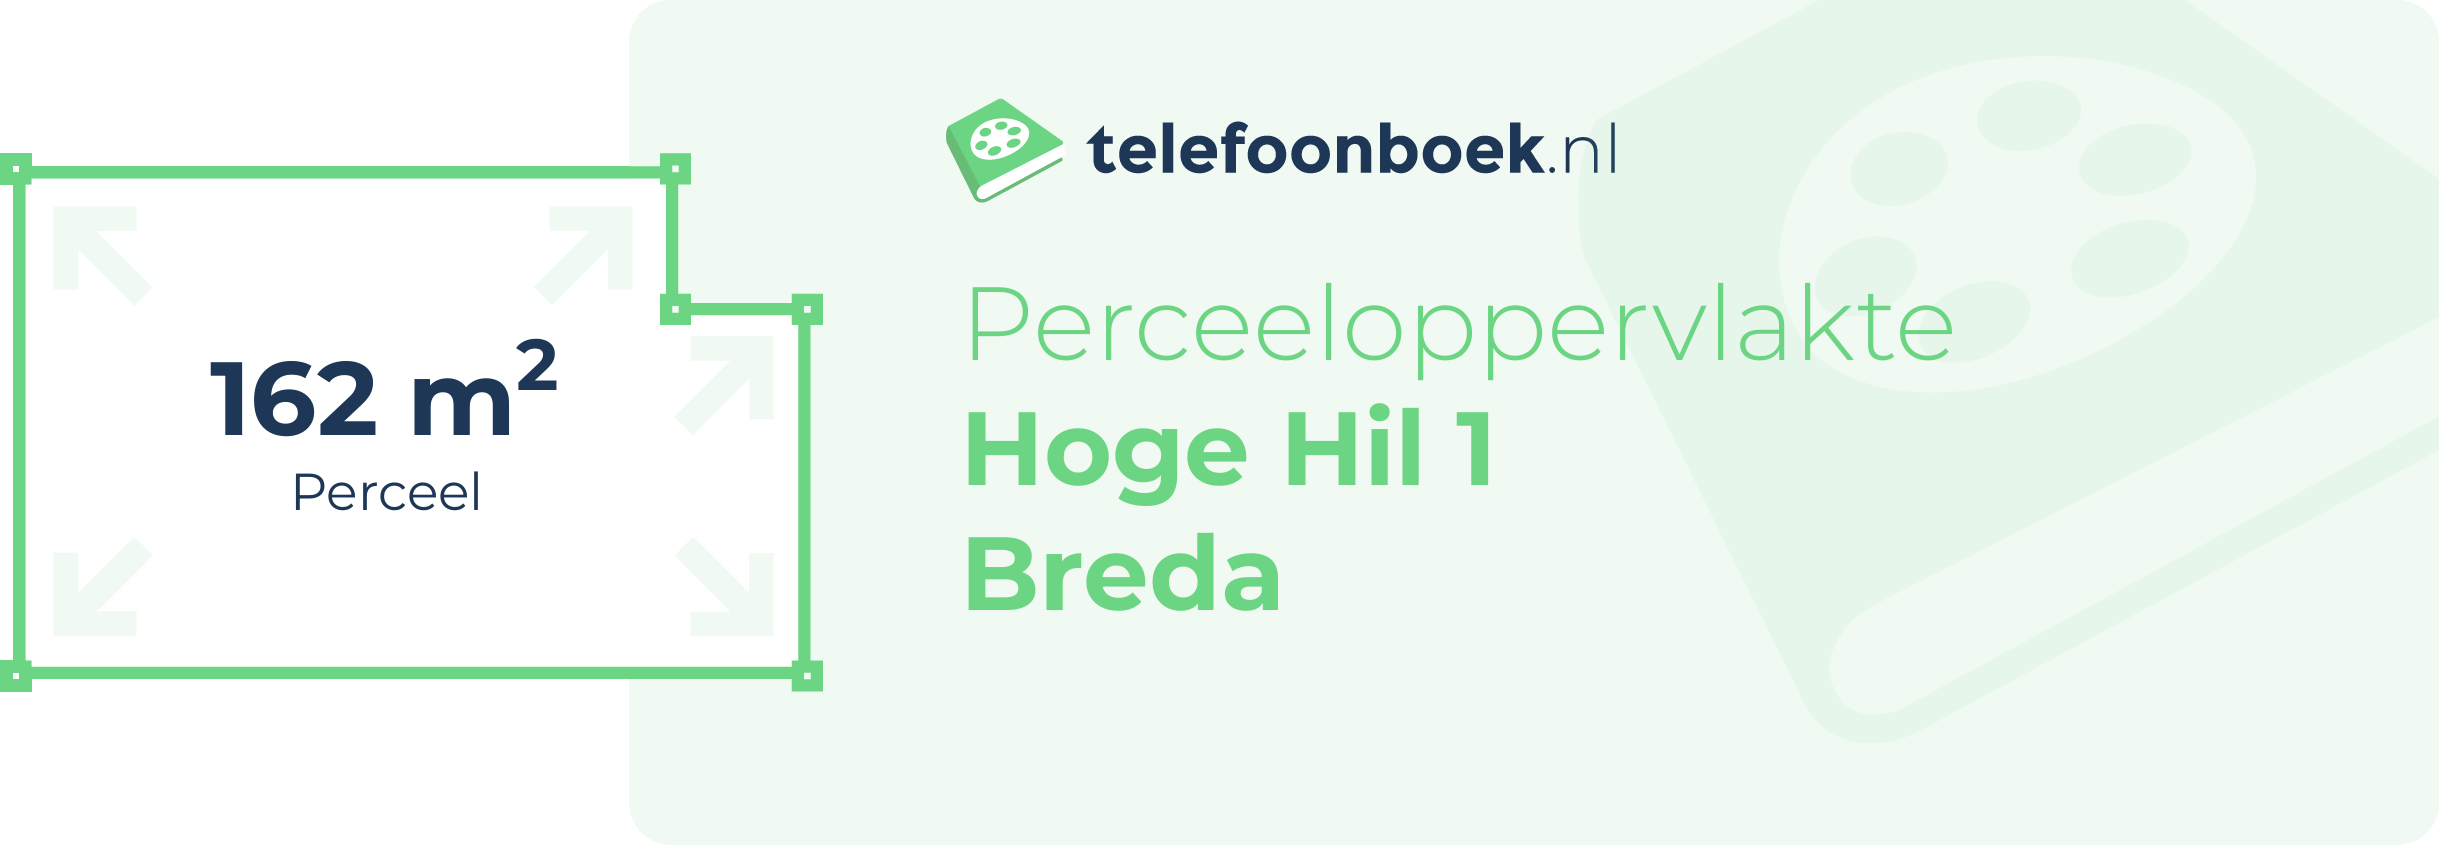 Perceeloppervlakte Hoge Hil 1 Breda